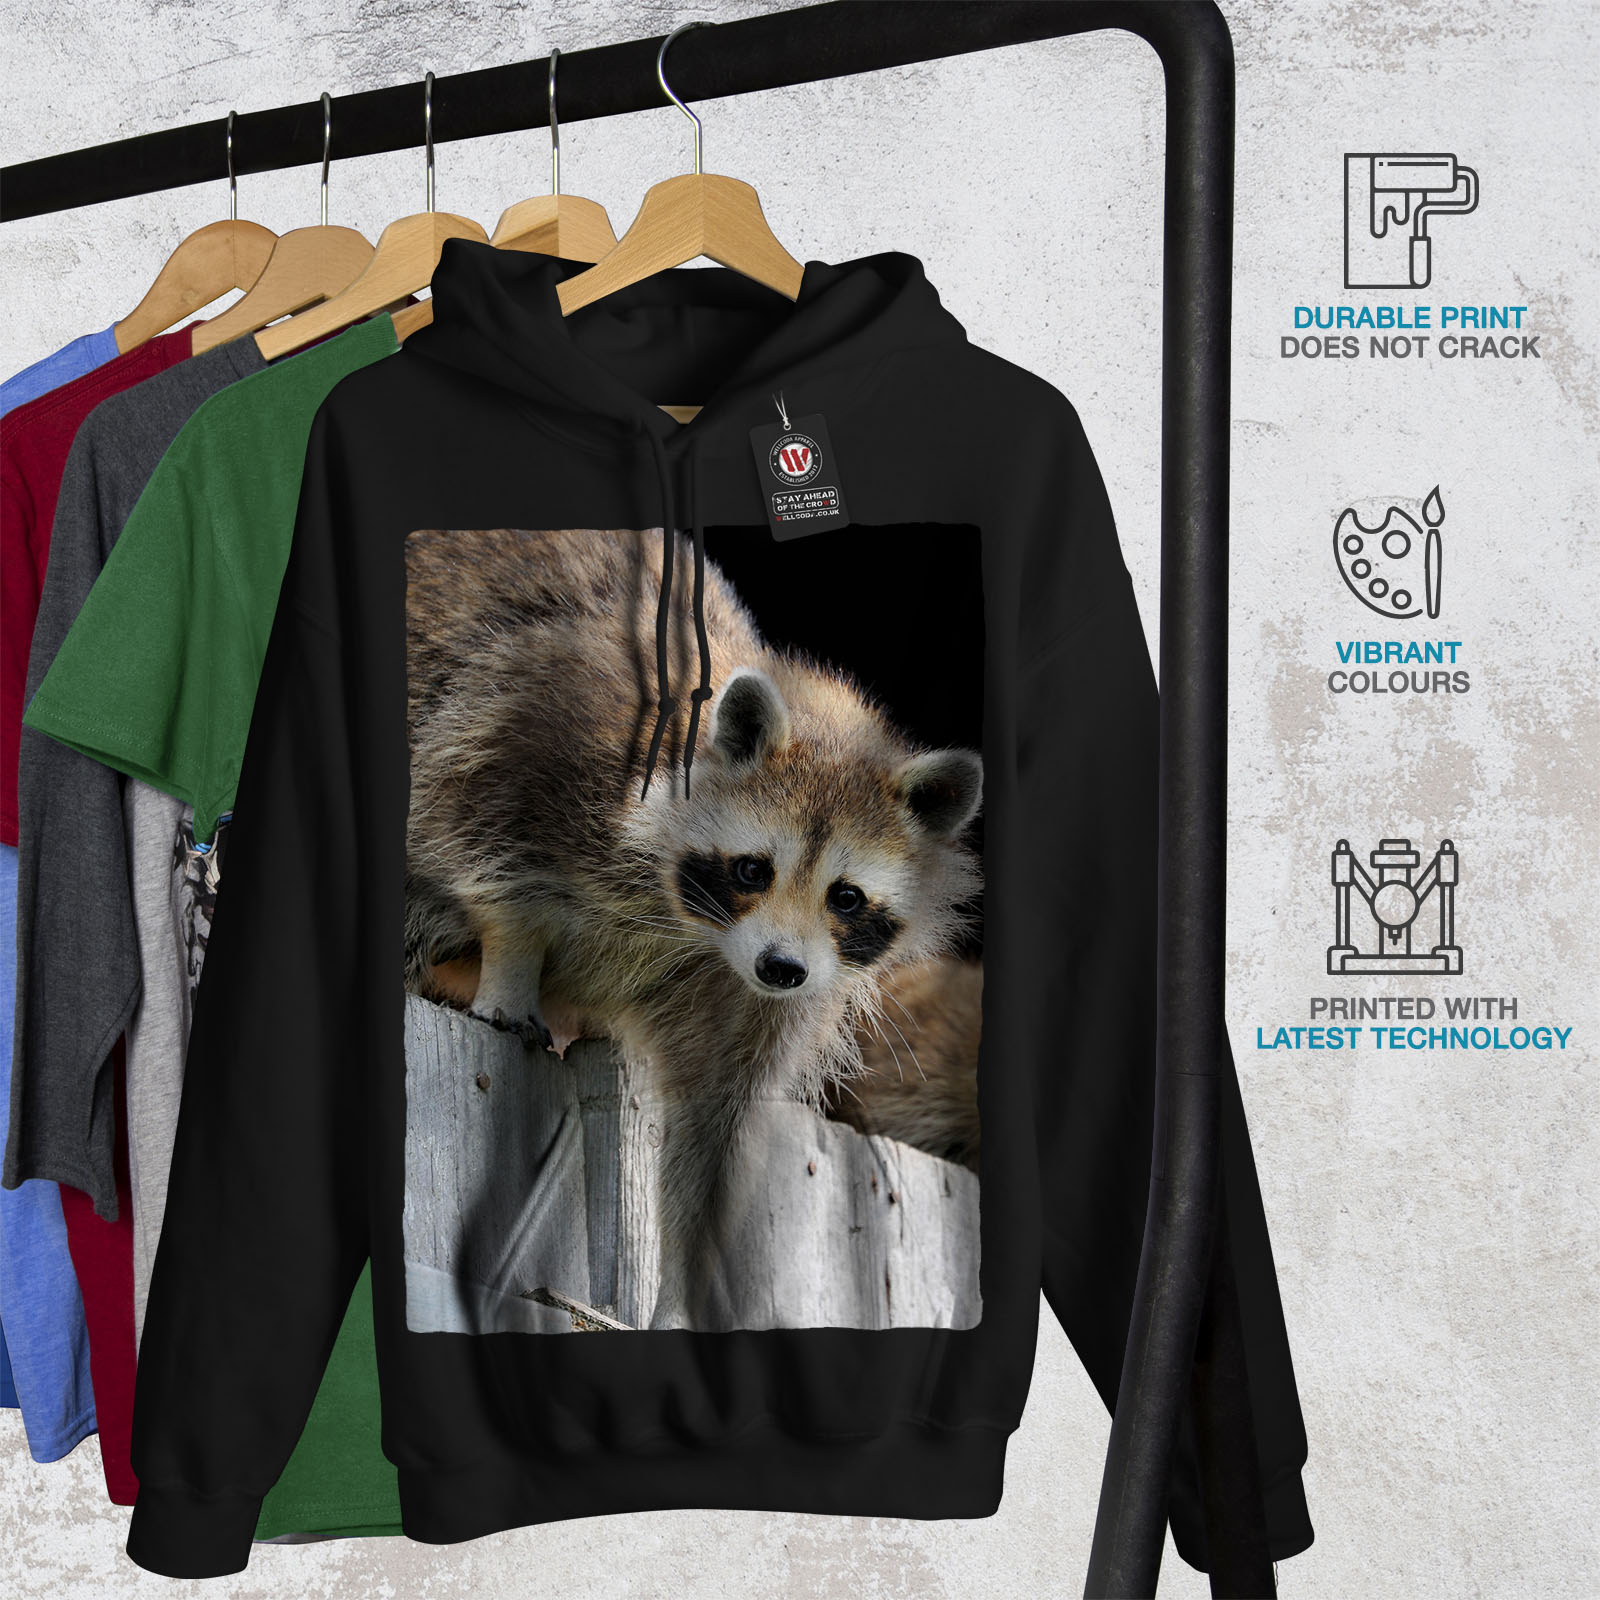 King Casual Pullover Jumper Wellcoda Racoon Photo Wild Animal Womens Sweatshirt